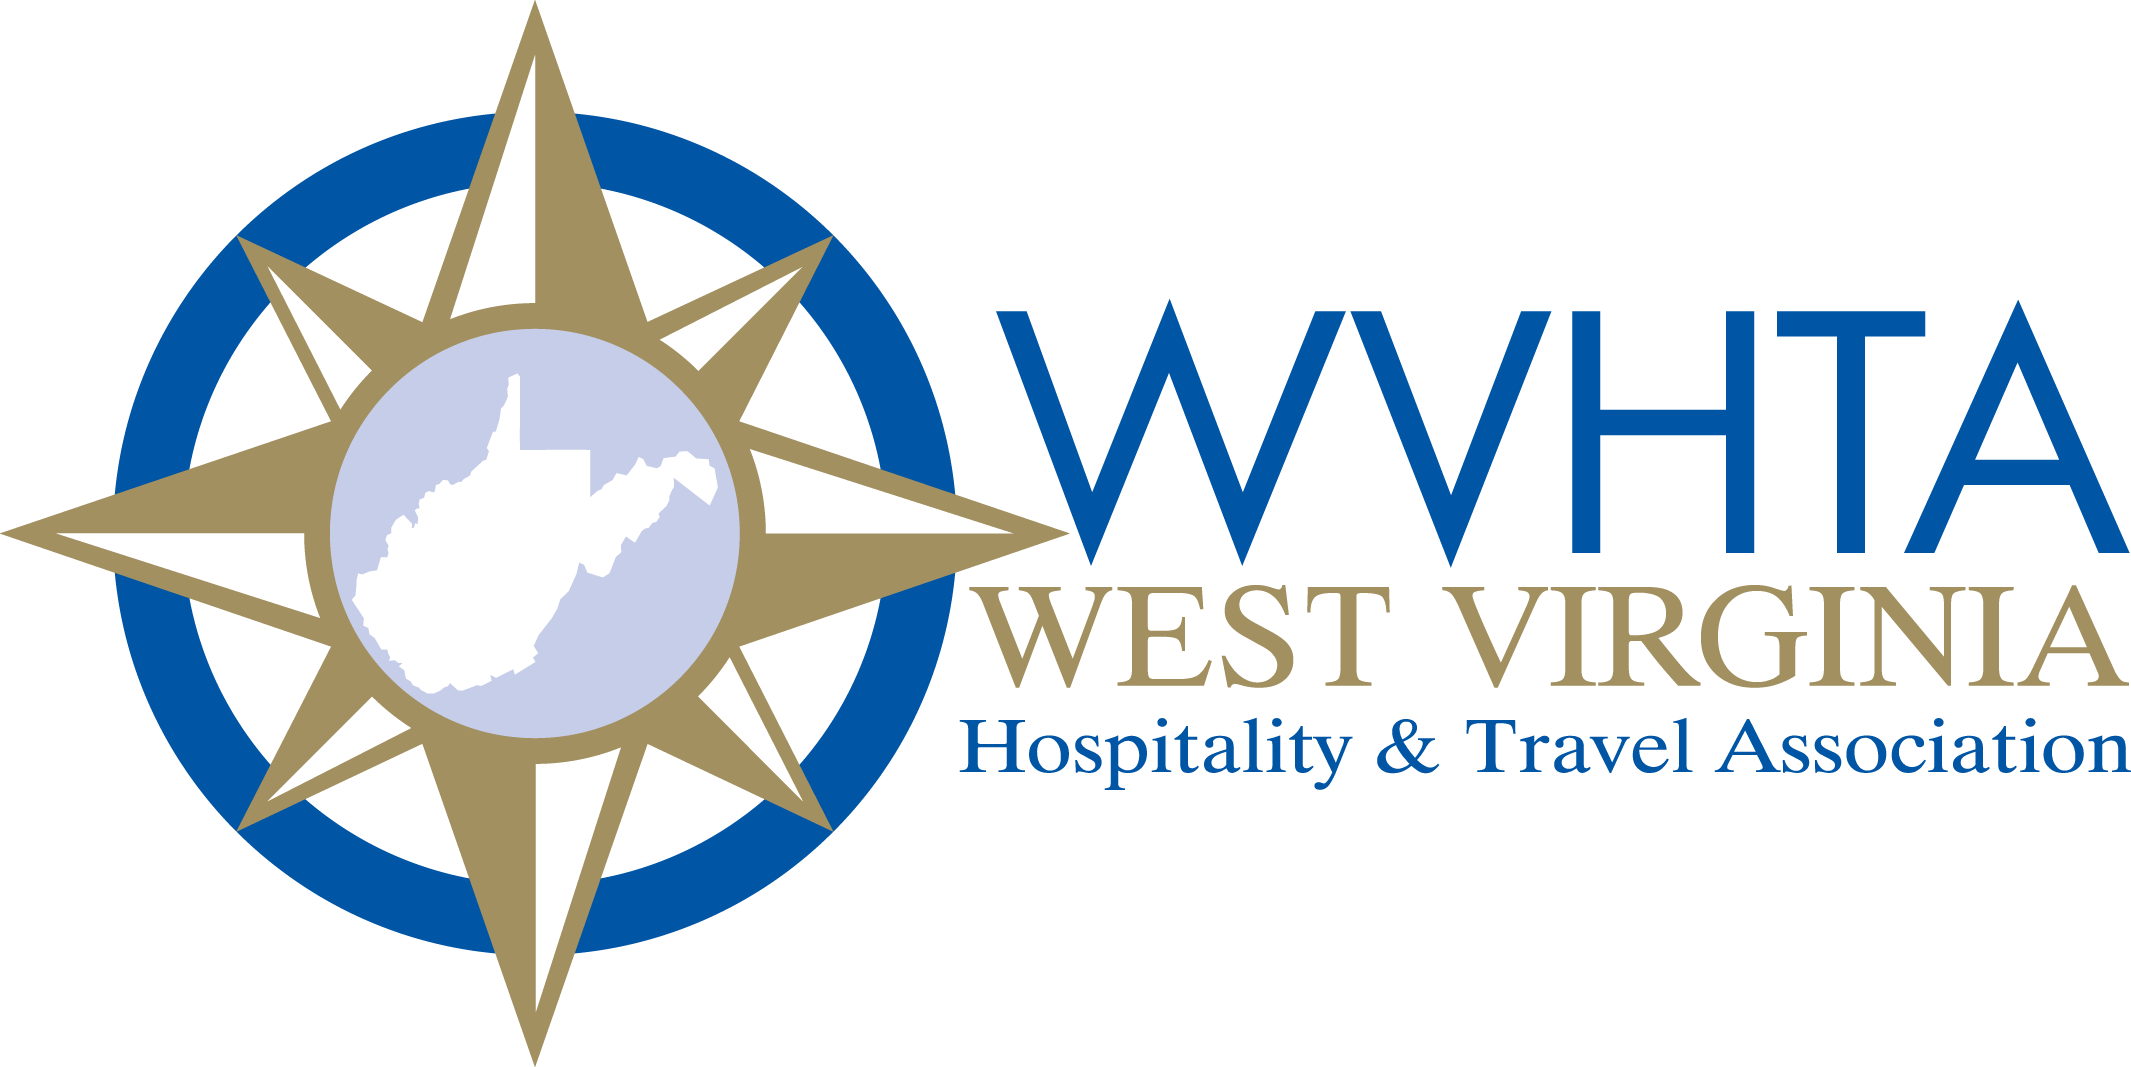 WVHTA logo